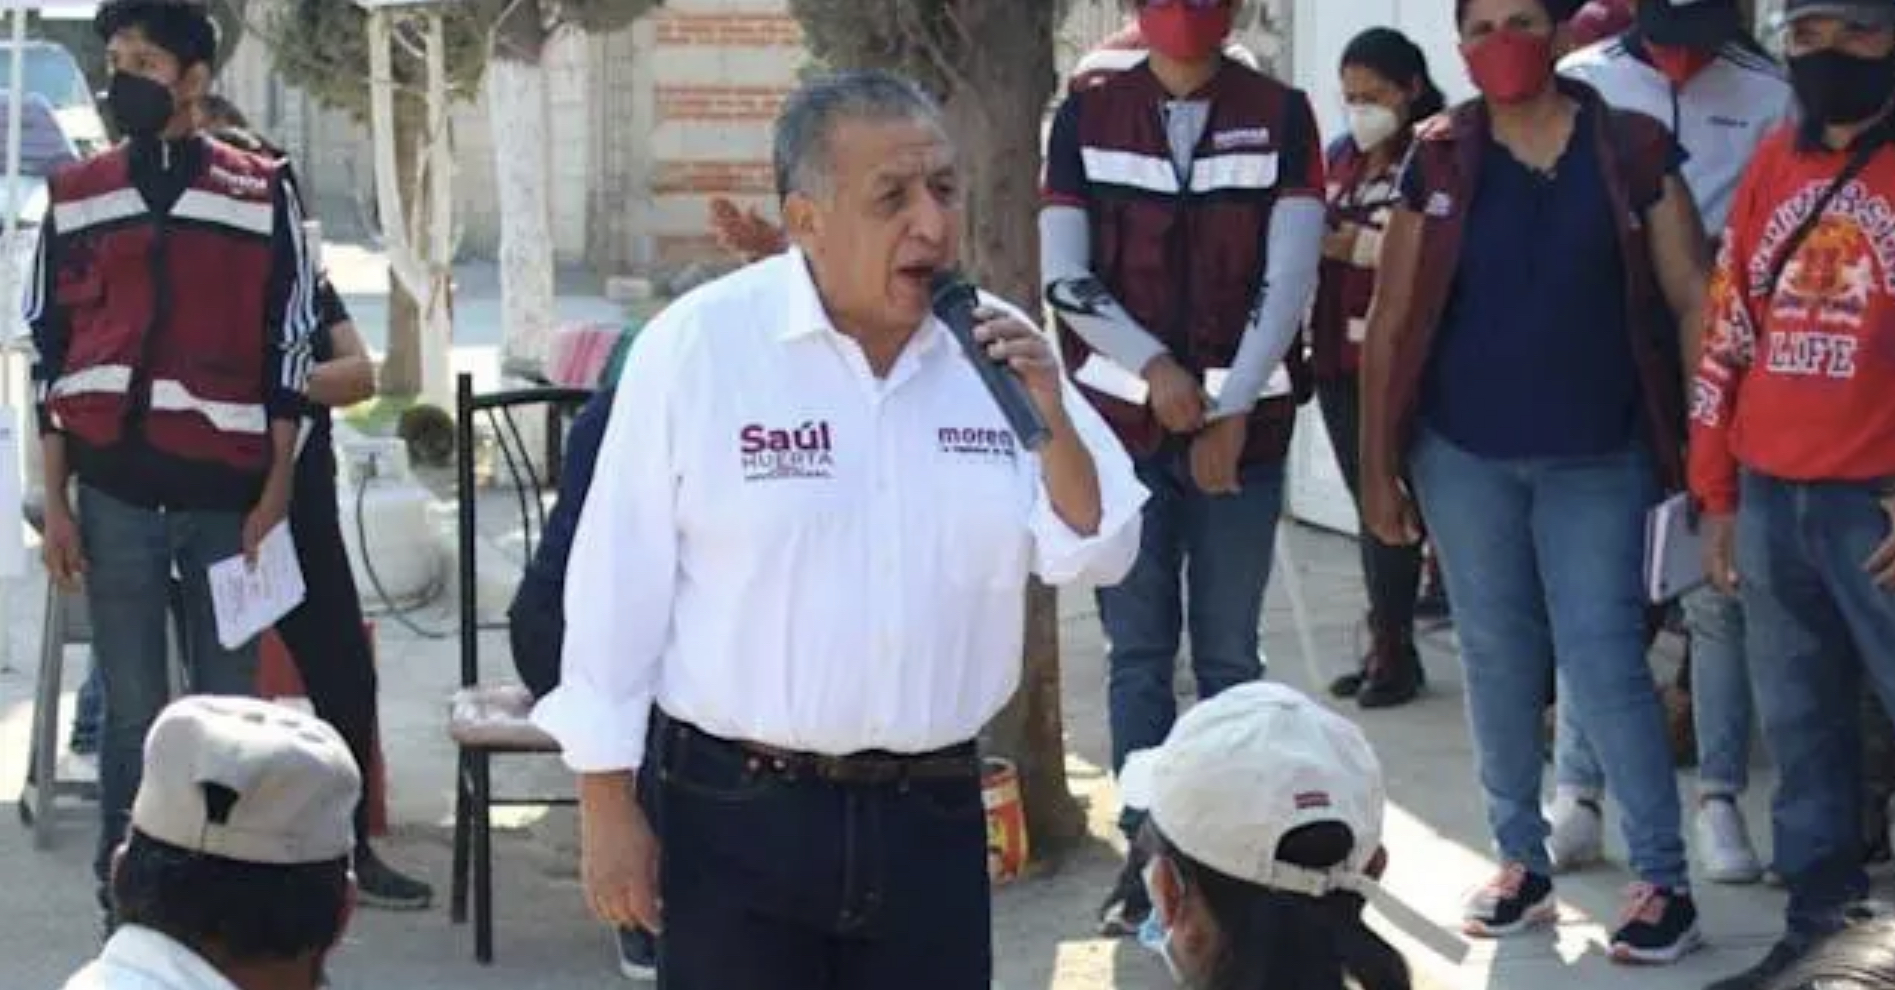 Escándalos políticos; diputado morenista acusado de violación y candidato de Zacatecas por abuso sexual